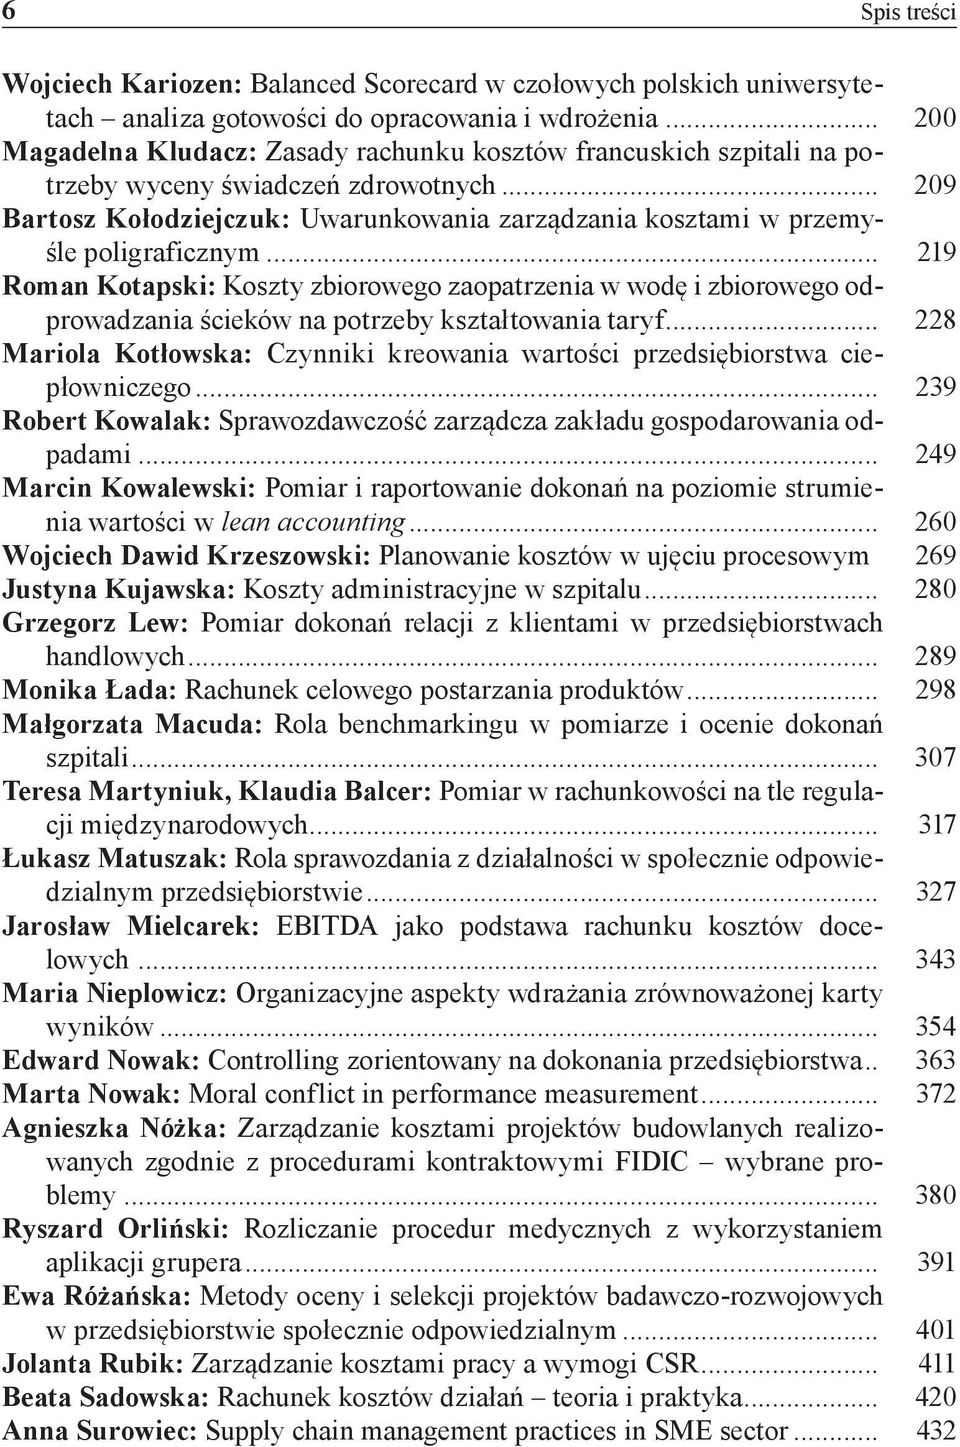 .. 209 Bartosz Kołodziejczuk: Uwarunkowania zarządzania kosztami w przemyśle poligraficznym.